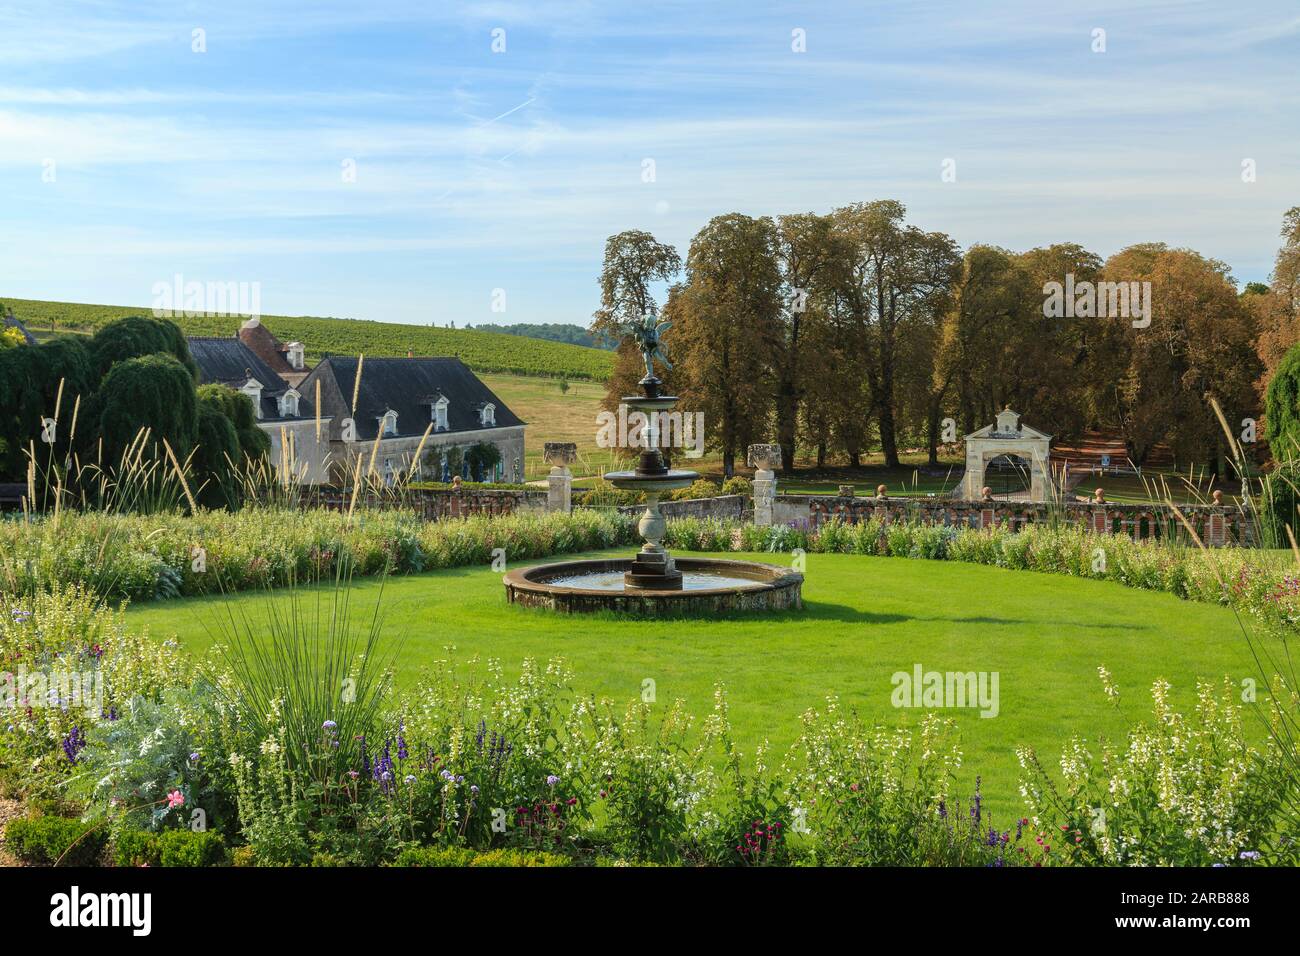 Francia, Indre et Loire, Chancay, Chateau de Valmer giardini, vista del portico d'ingresso e castello allegato (menzione obbligatoria Chateau de Valmer) // Fr Foto Stock